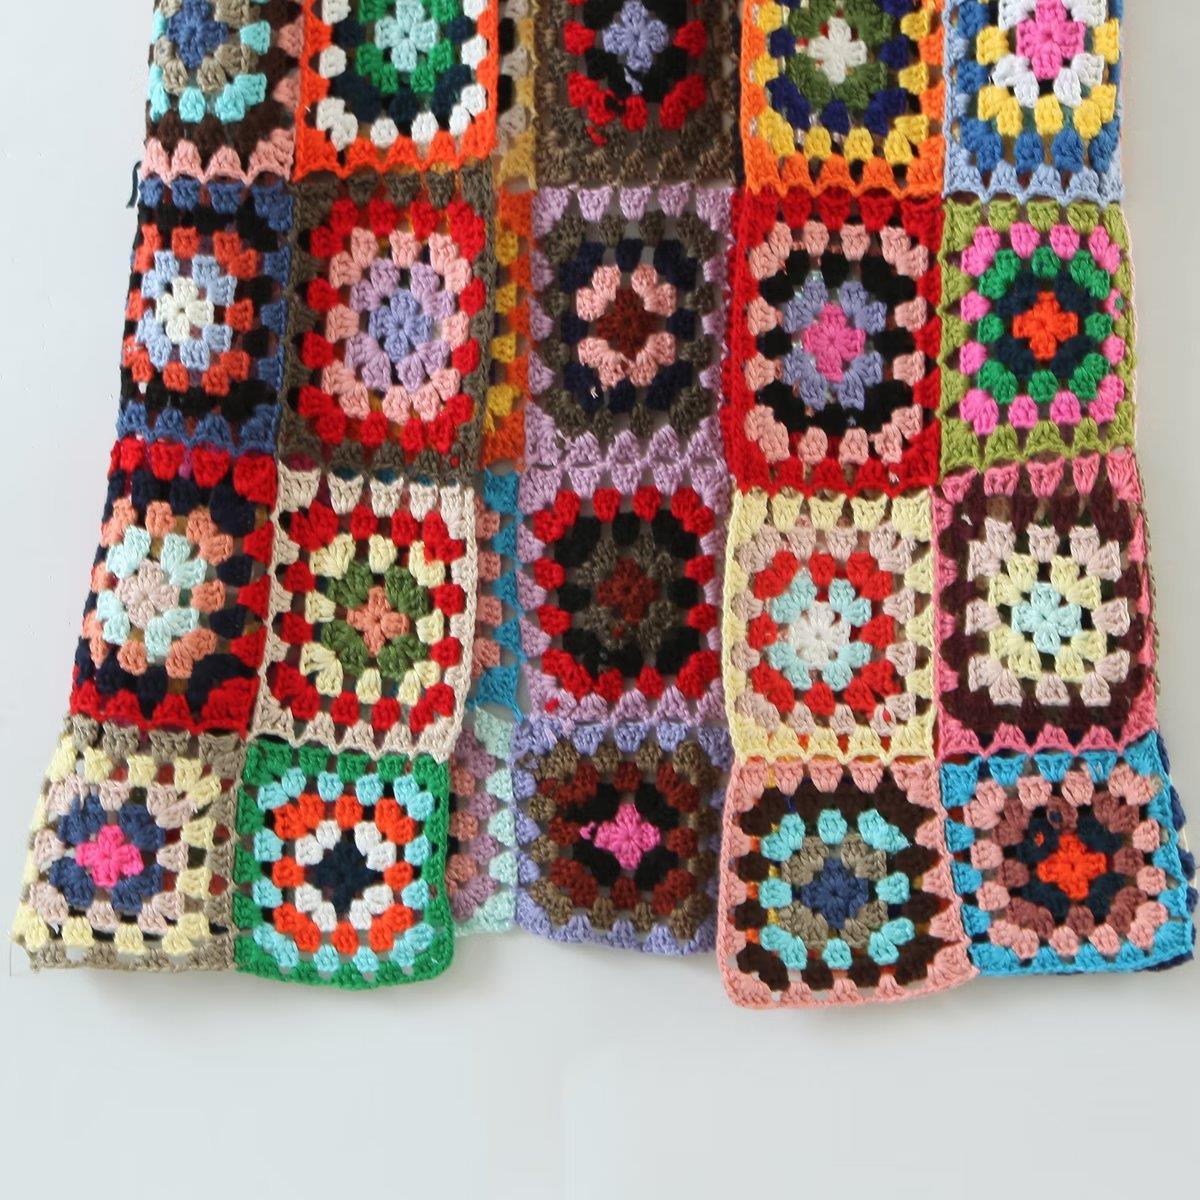 Boho Knit Maxi Sweater - Kelly Obi New York